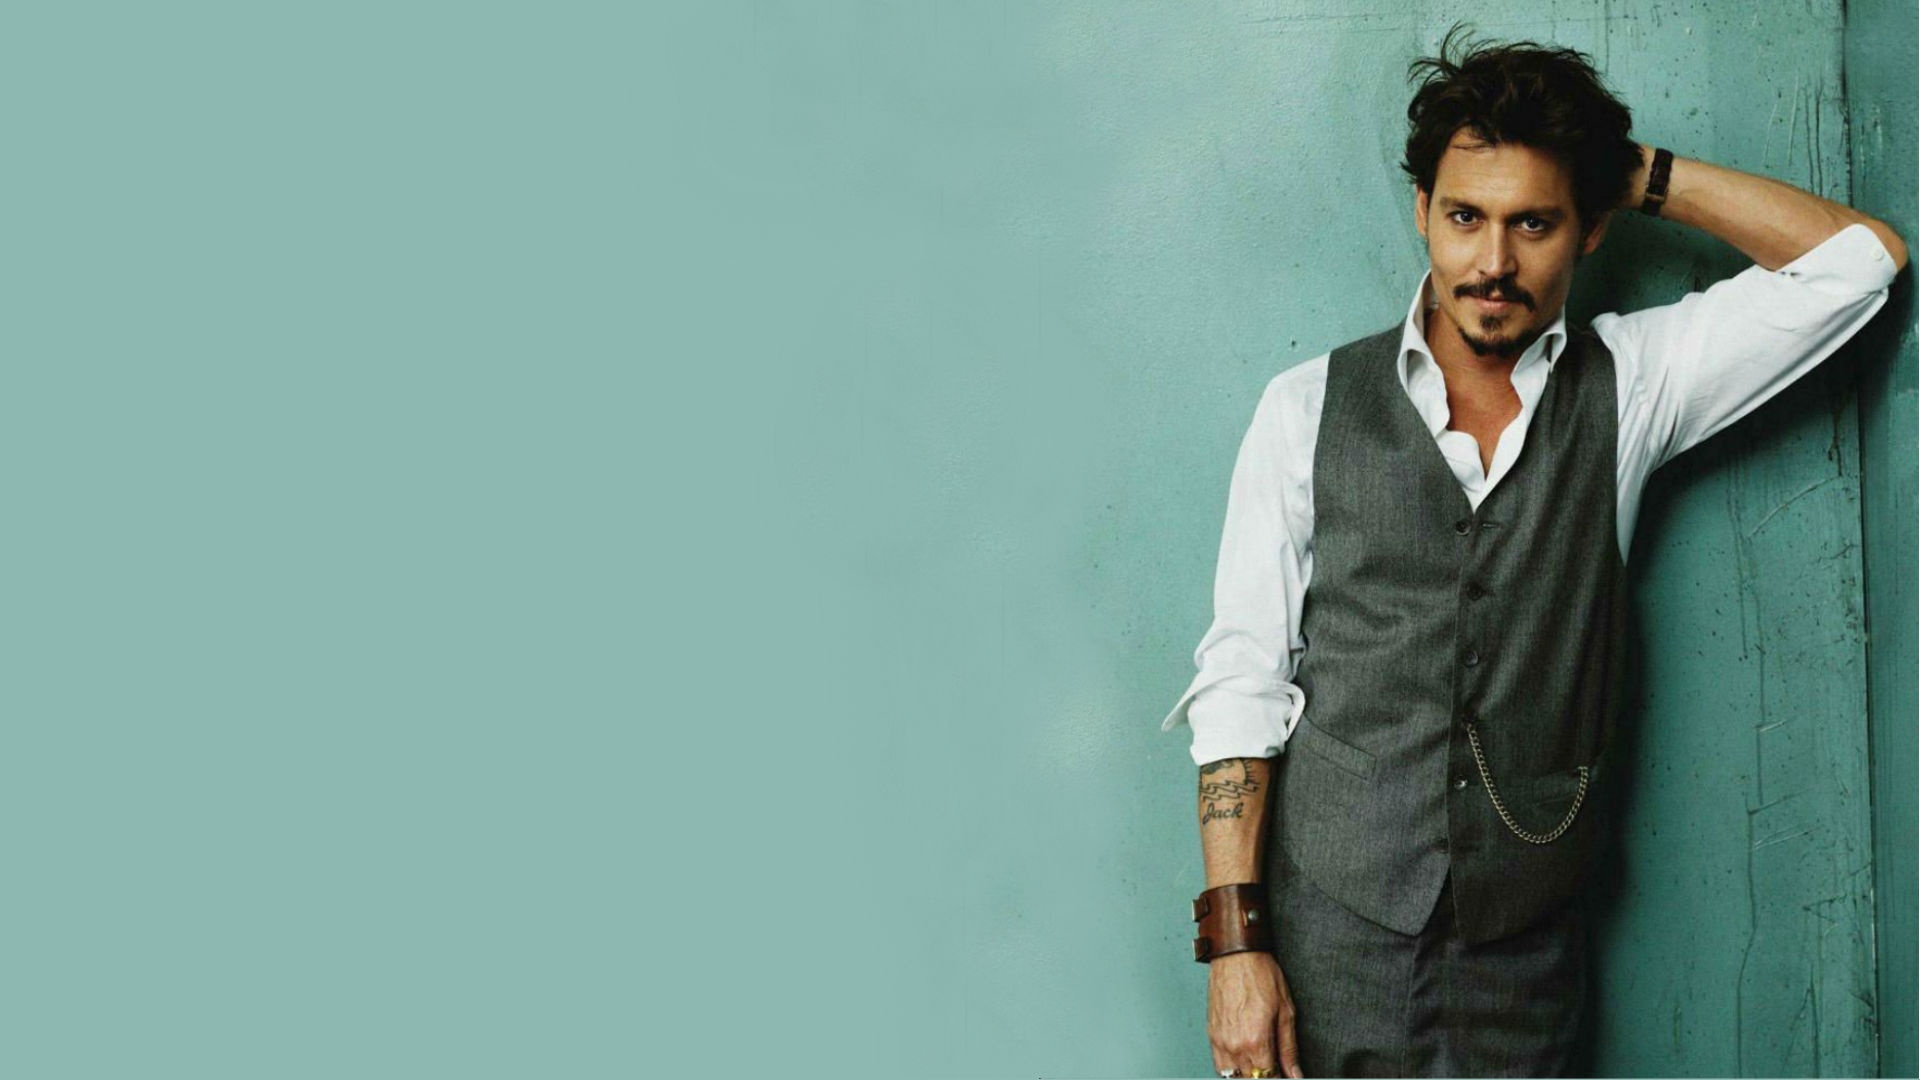 47+] Johnny Depp Wallpapers for Desktop - WallpaperSafari